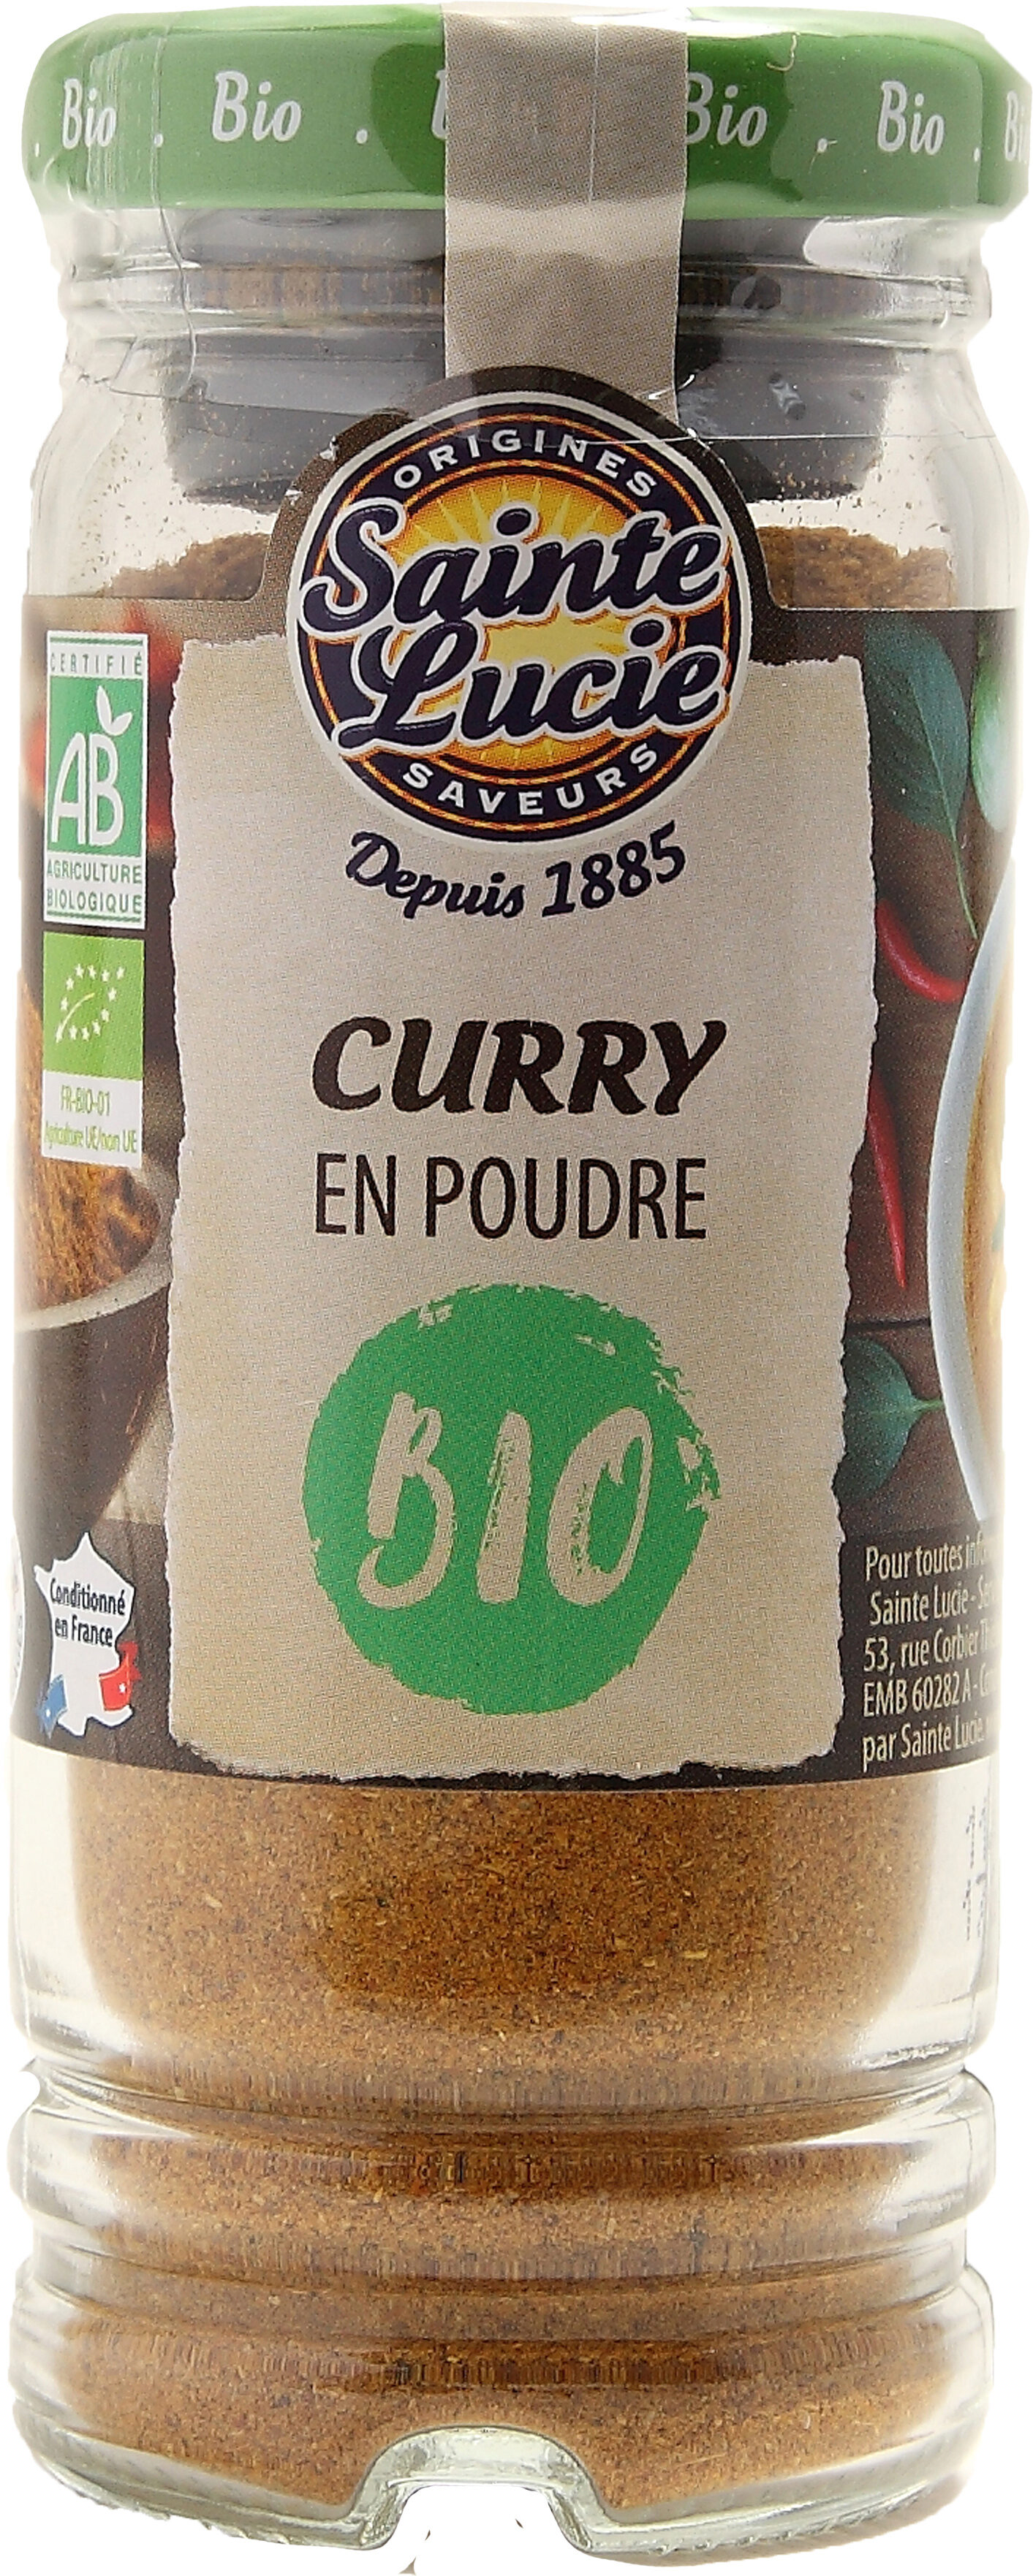 Curry poudre BIO - Produit